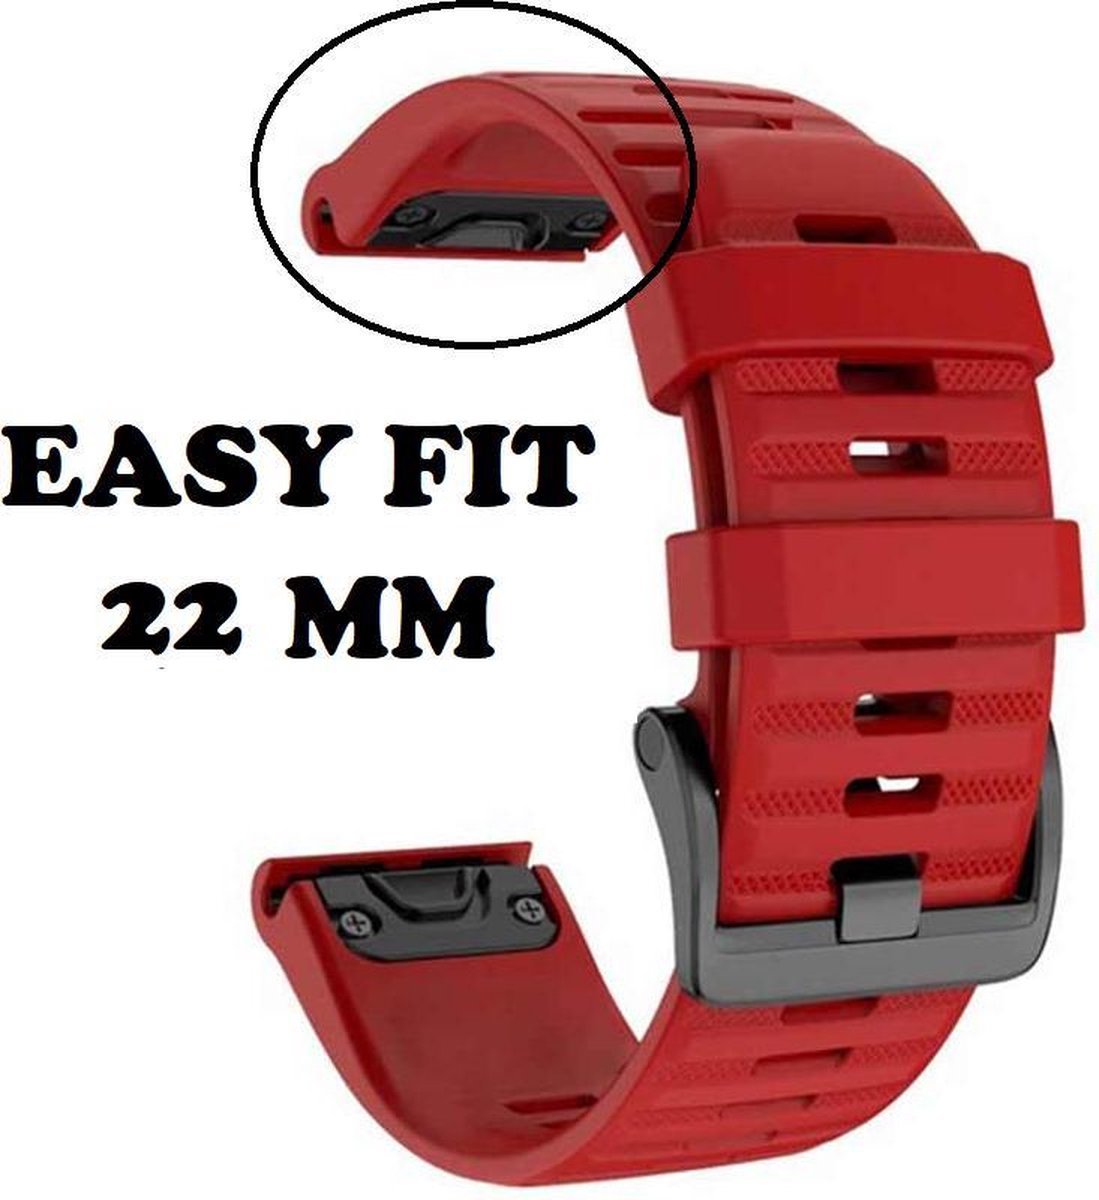 Firsttee - Siliconen Horlogeband - EASY FIT - Voor GARMIN - ROOD - 22 MM - Horlogebandjes - Quick Release - Easy Click - Garmin - S60 - S62 - Fenix 5 - Forerunner 935 - Fenix 6 (Pro) - Horloge bandje - Golfkleding - Golf accessoires - Cadeau - Firsttee